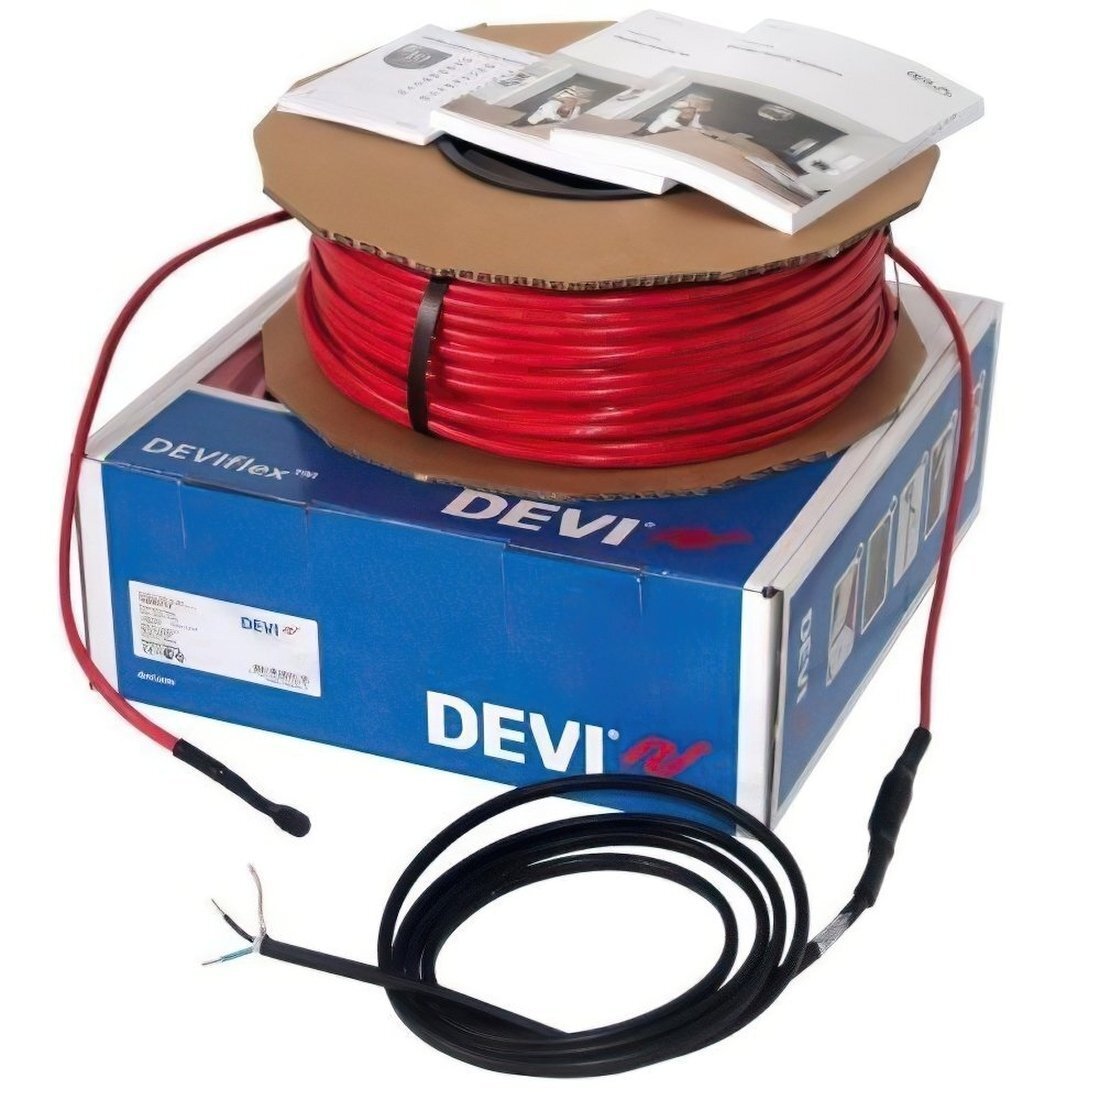 Теплый пол DEVI Flex двухжильный нагревательный кабель 18T, 935 Вт, 230V, 52 м (140F1243) фото 